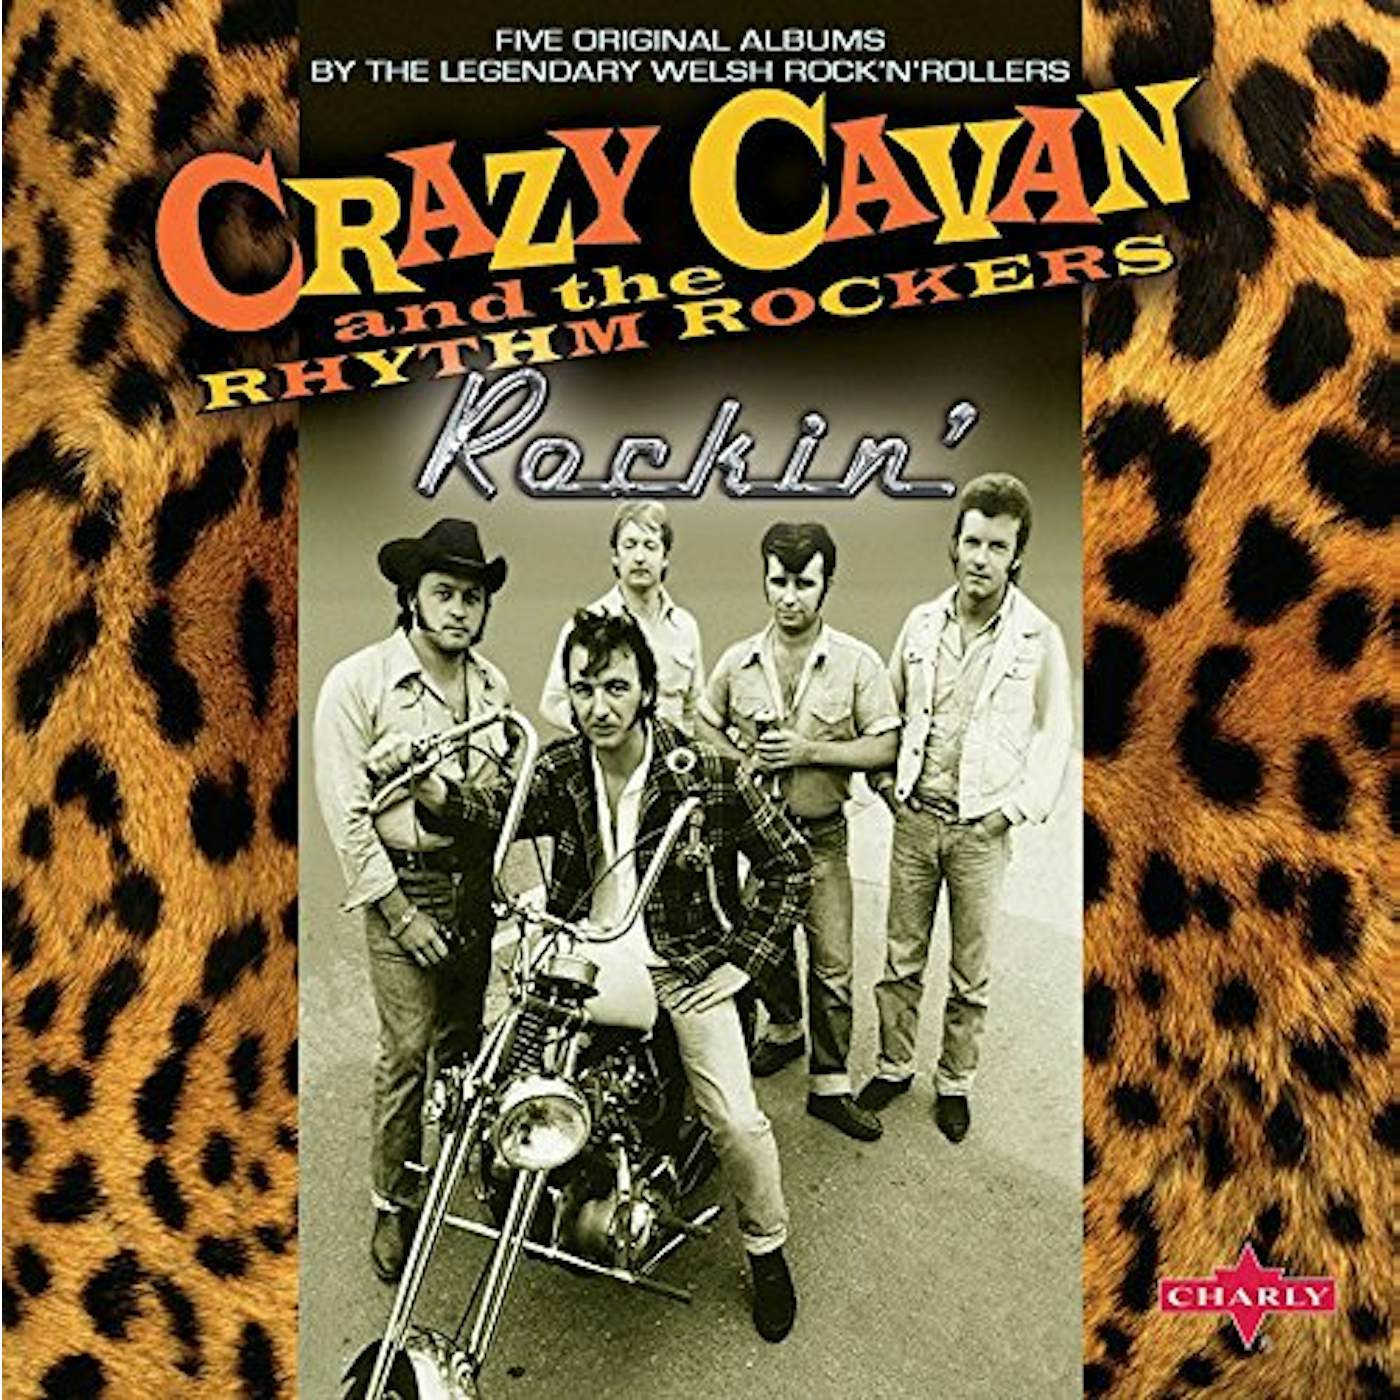 Crazy Cavan ROCKIN CD